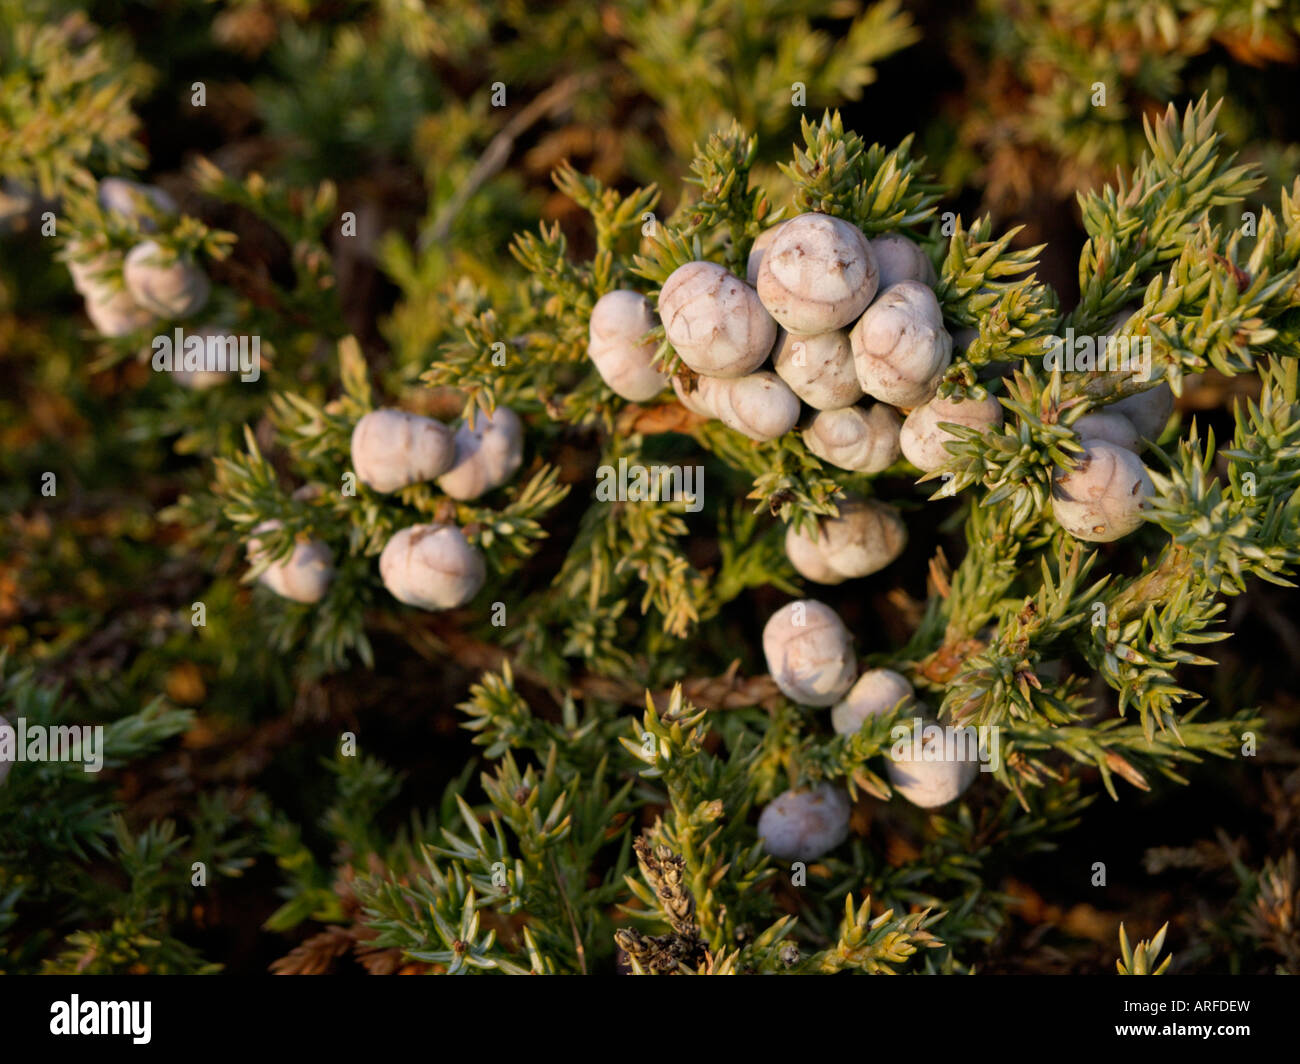 Blue star juniper (Juniperus squamata) Stock Photo